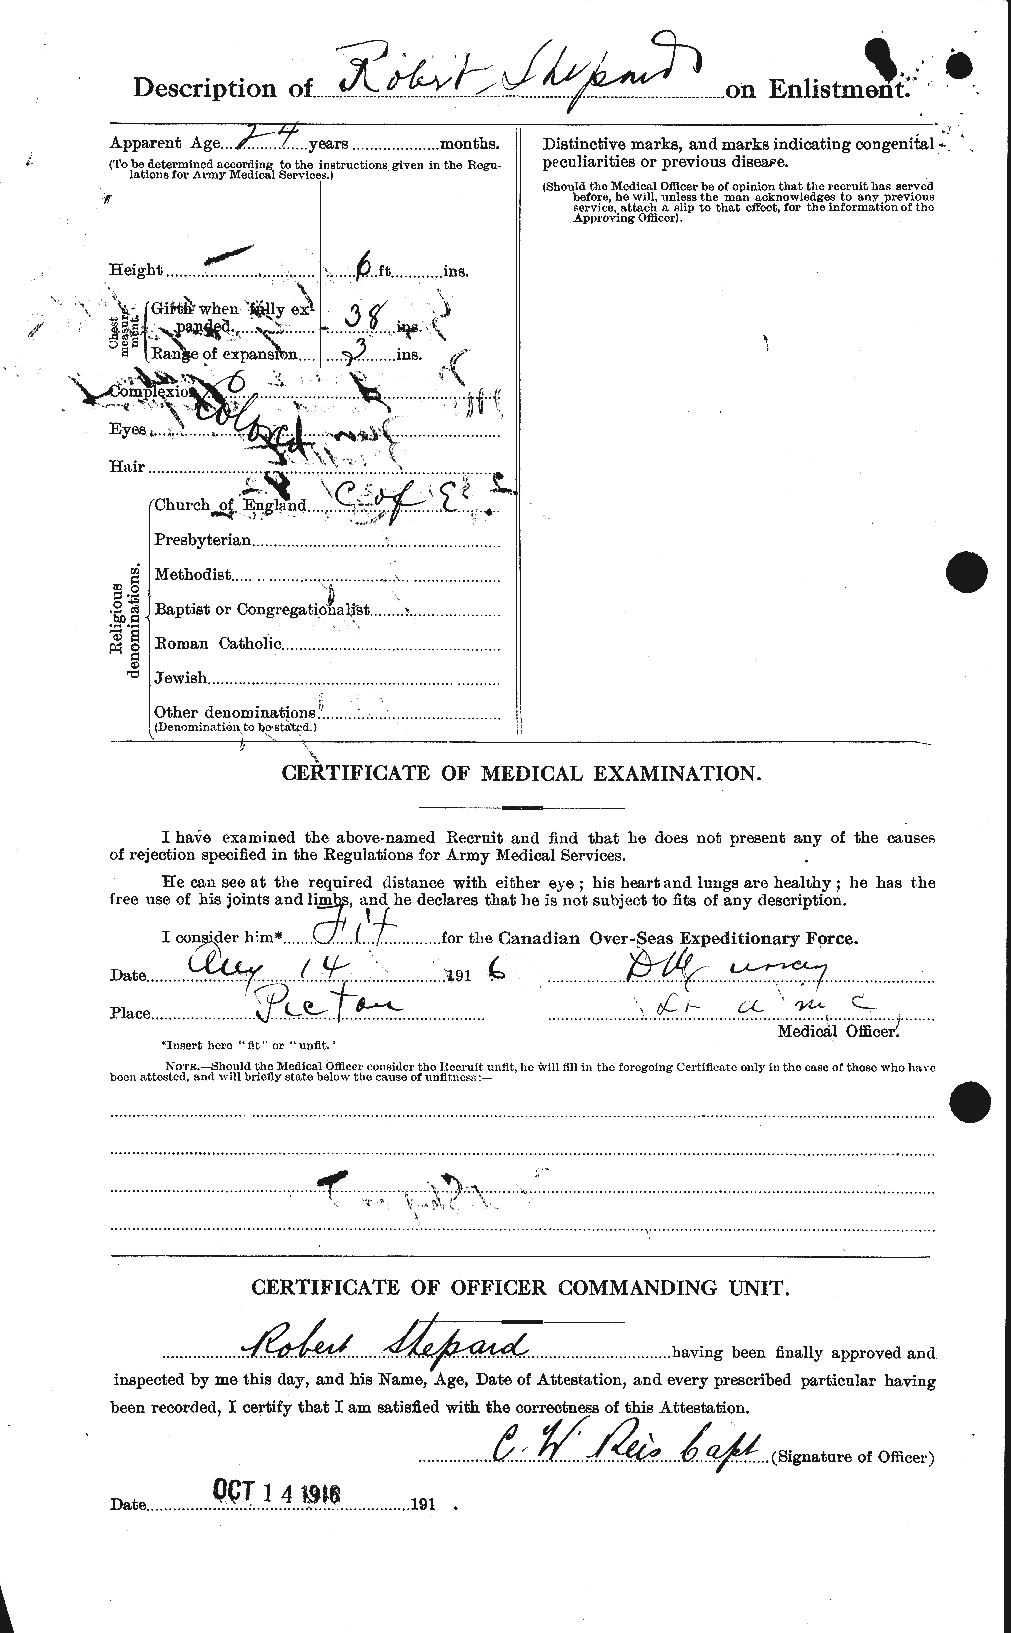 Dossiers du Personnel de la Première Guerre mondiale - CEC 088153b